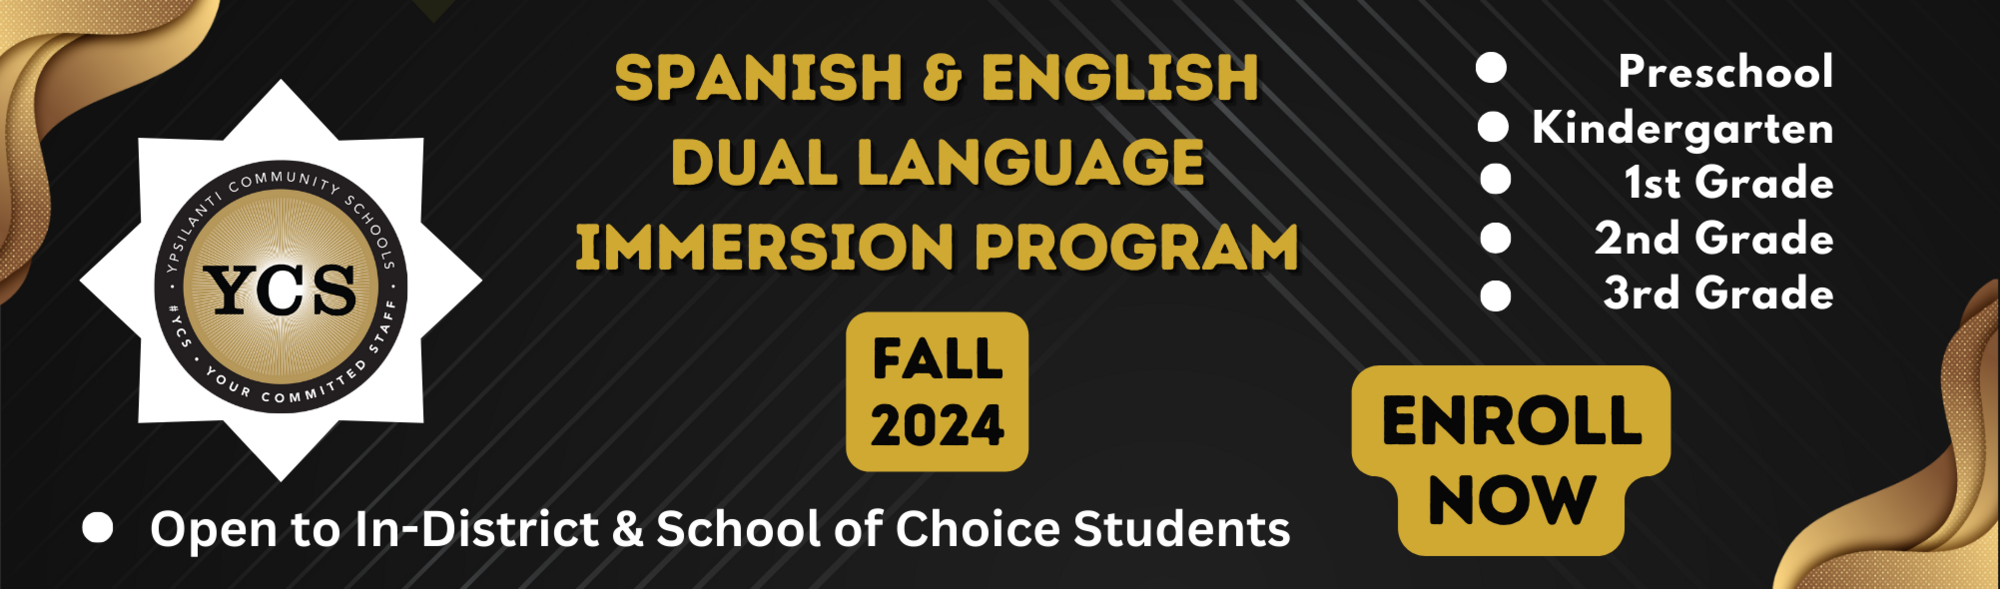 Spanish & English Dual Language Program - Fall 2024 - Enroll Now